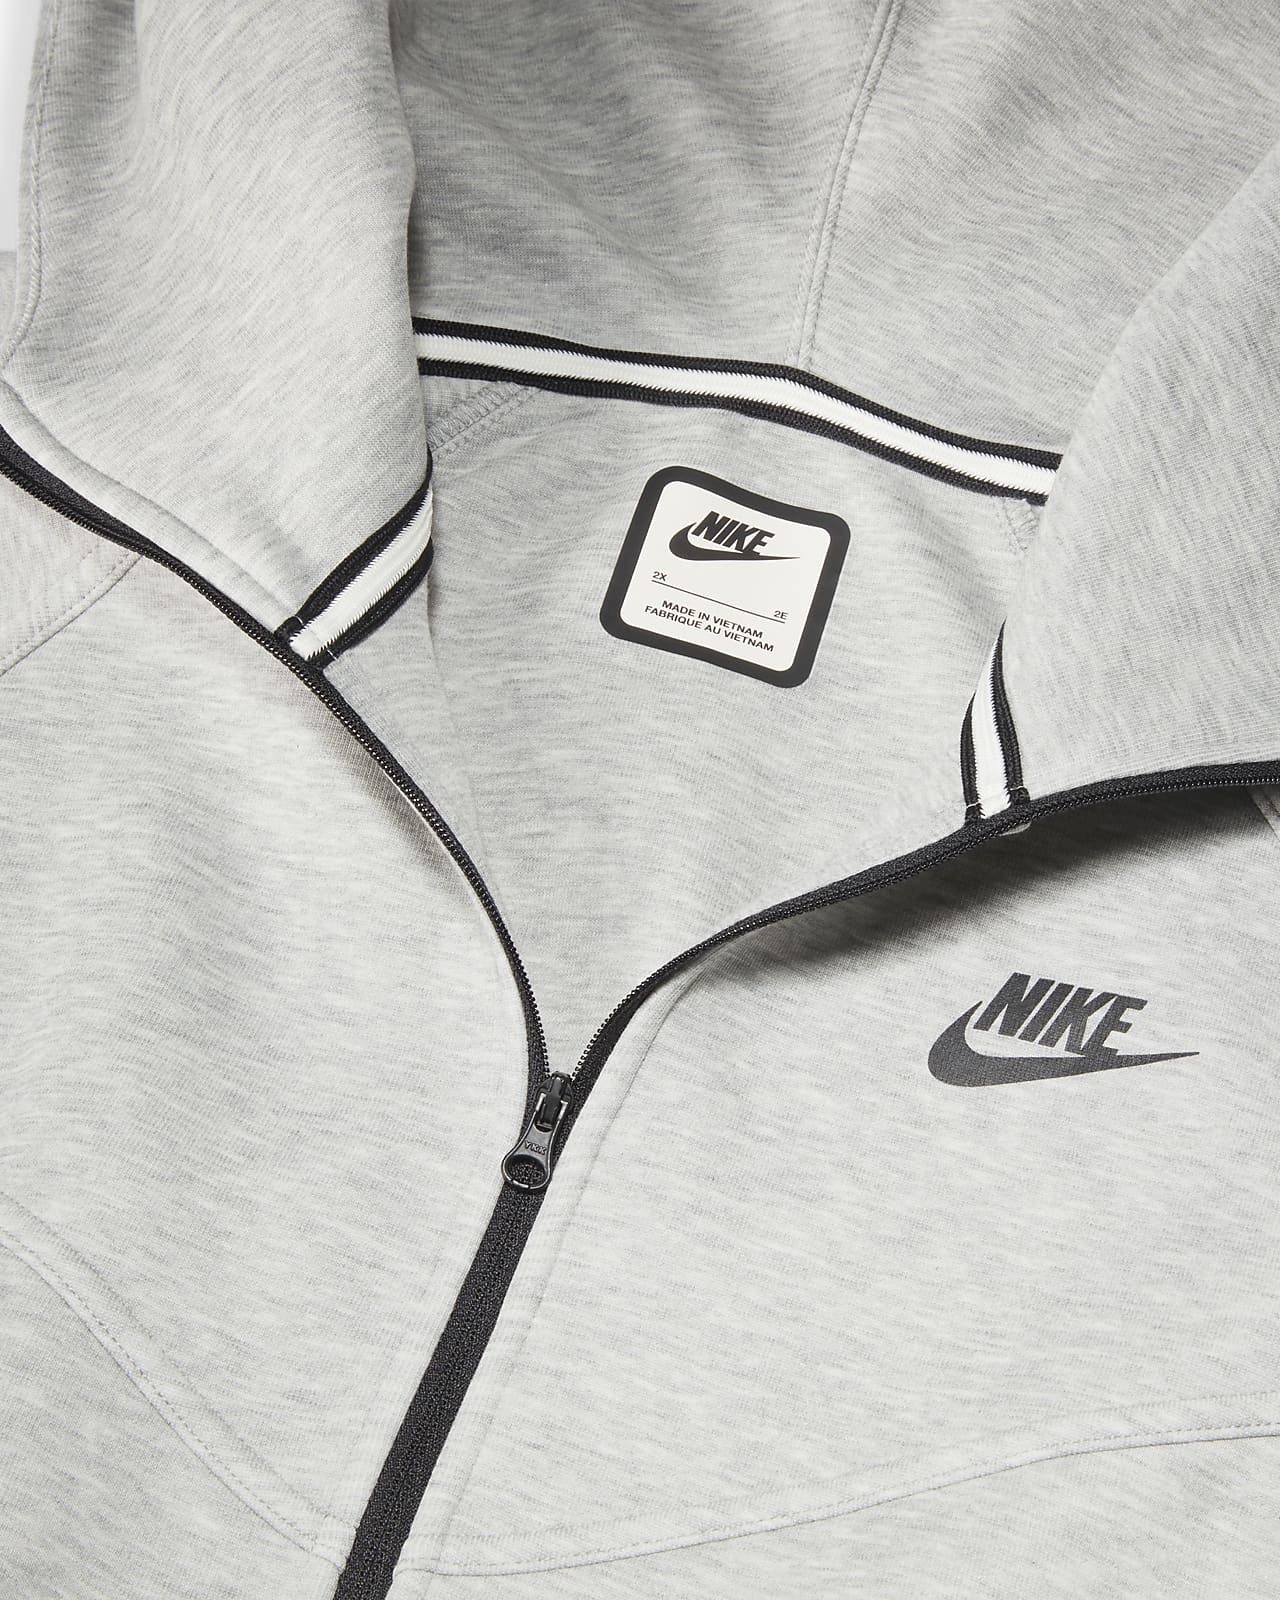 Nike Sportswear Tech Fleece Windrunner Women's Full-Zip Hoodie (Plus size)